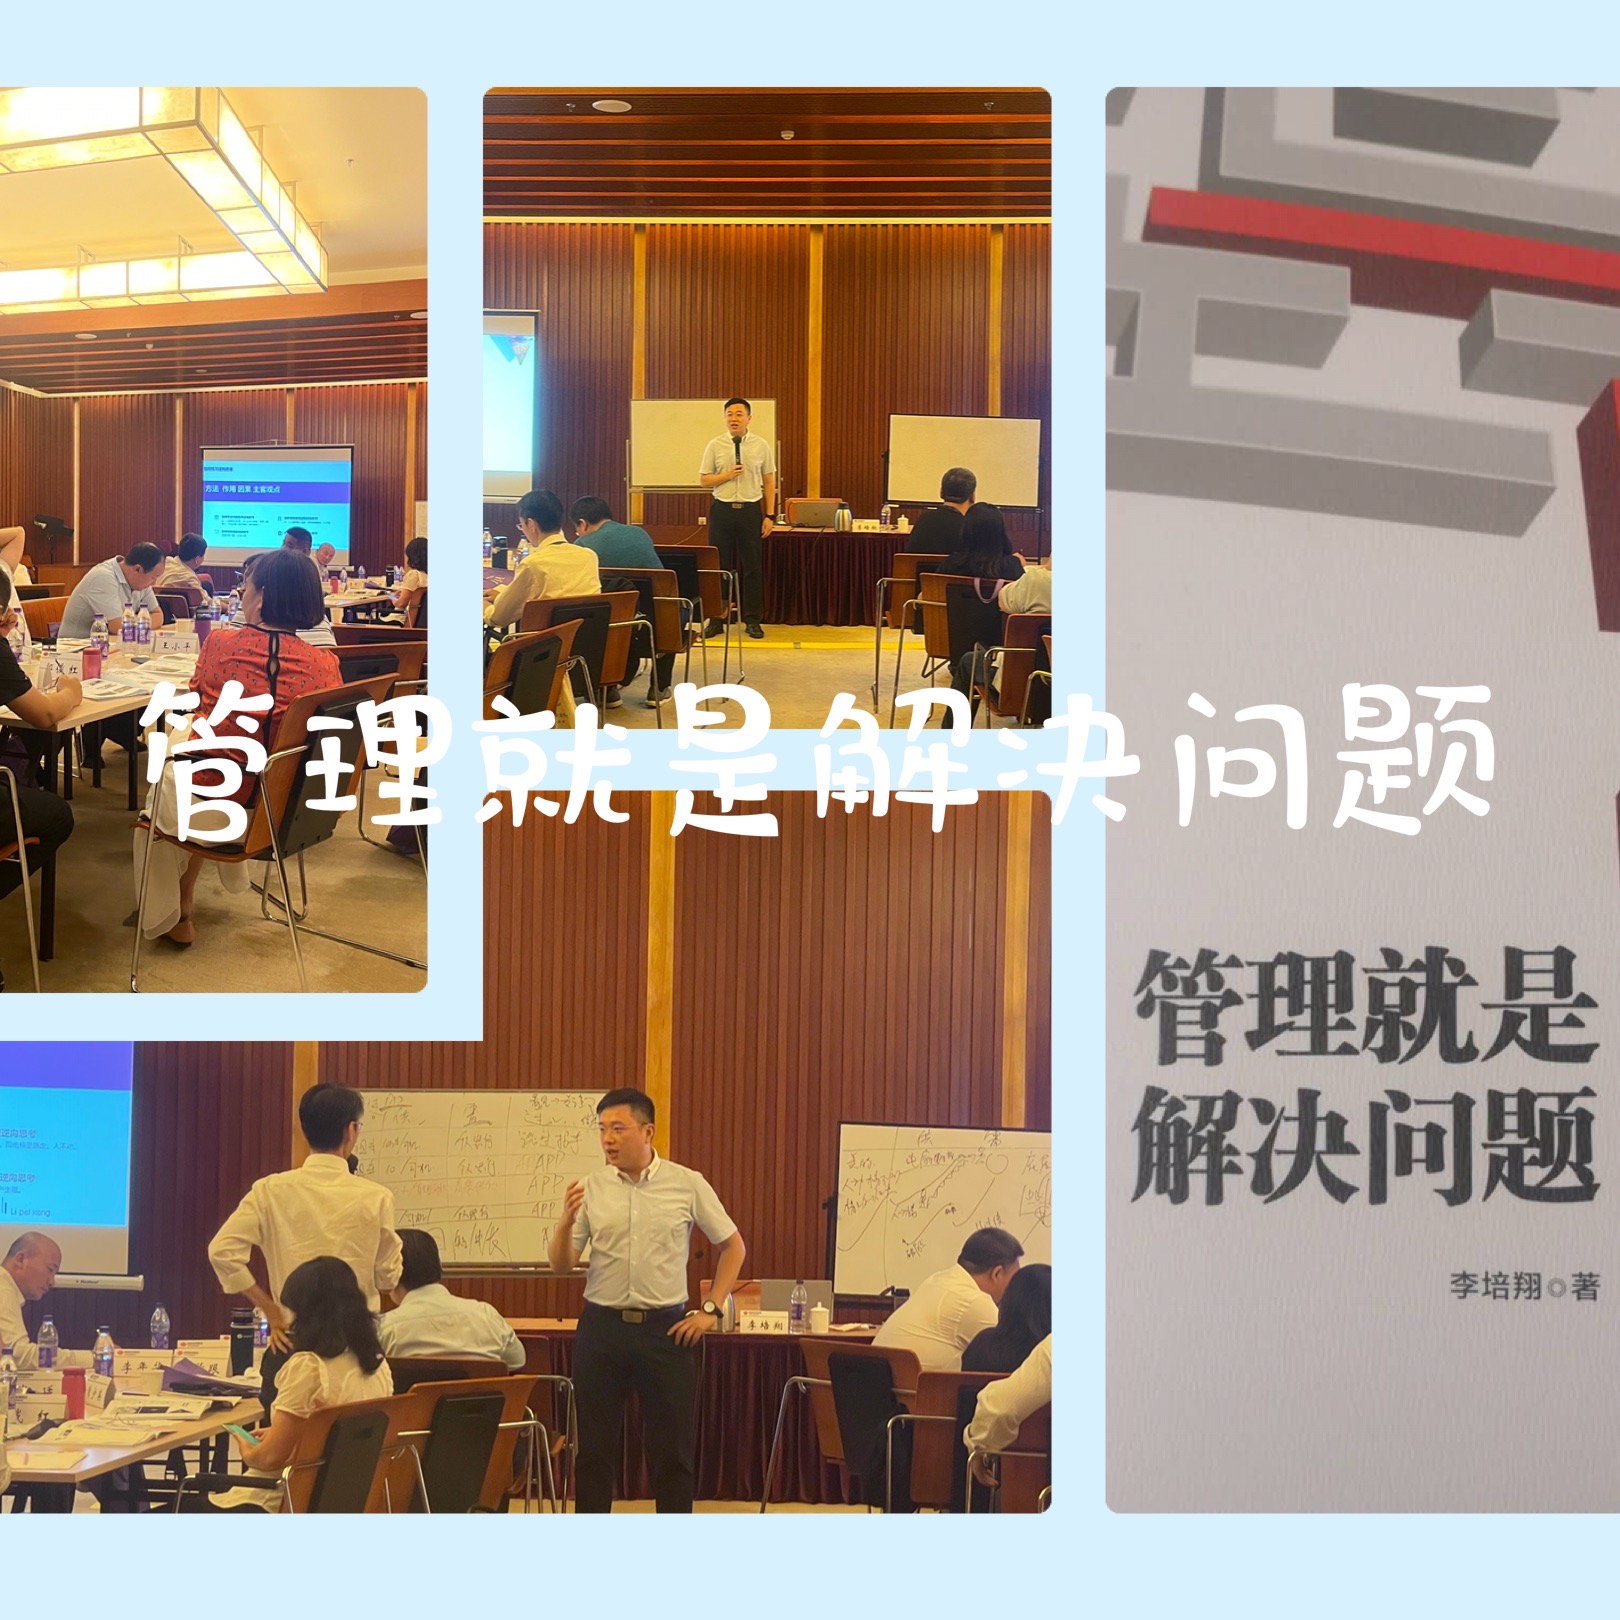 李培翔老师7月14日北京某能源环保公司课程圆满成功